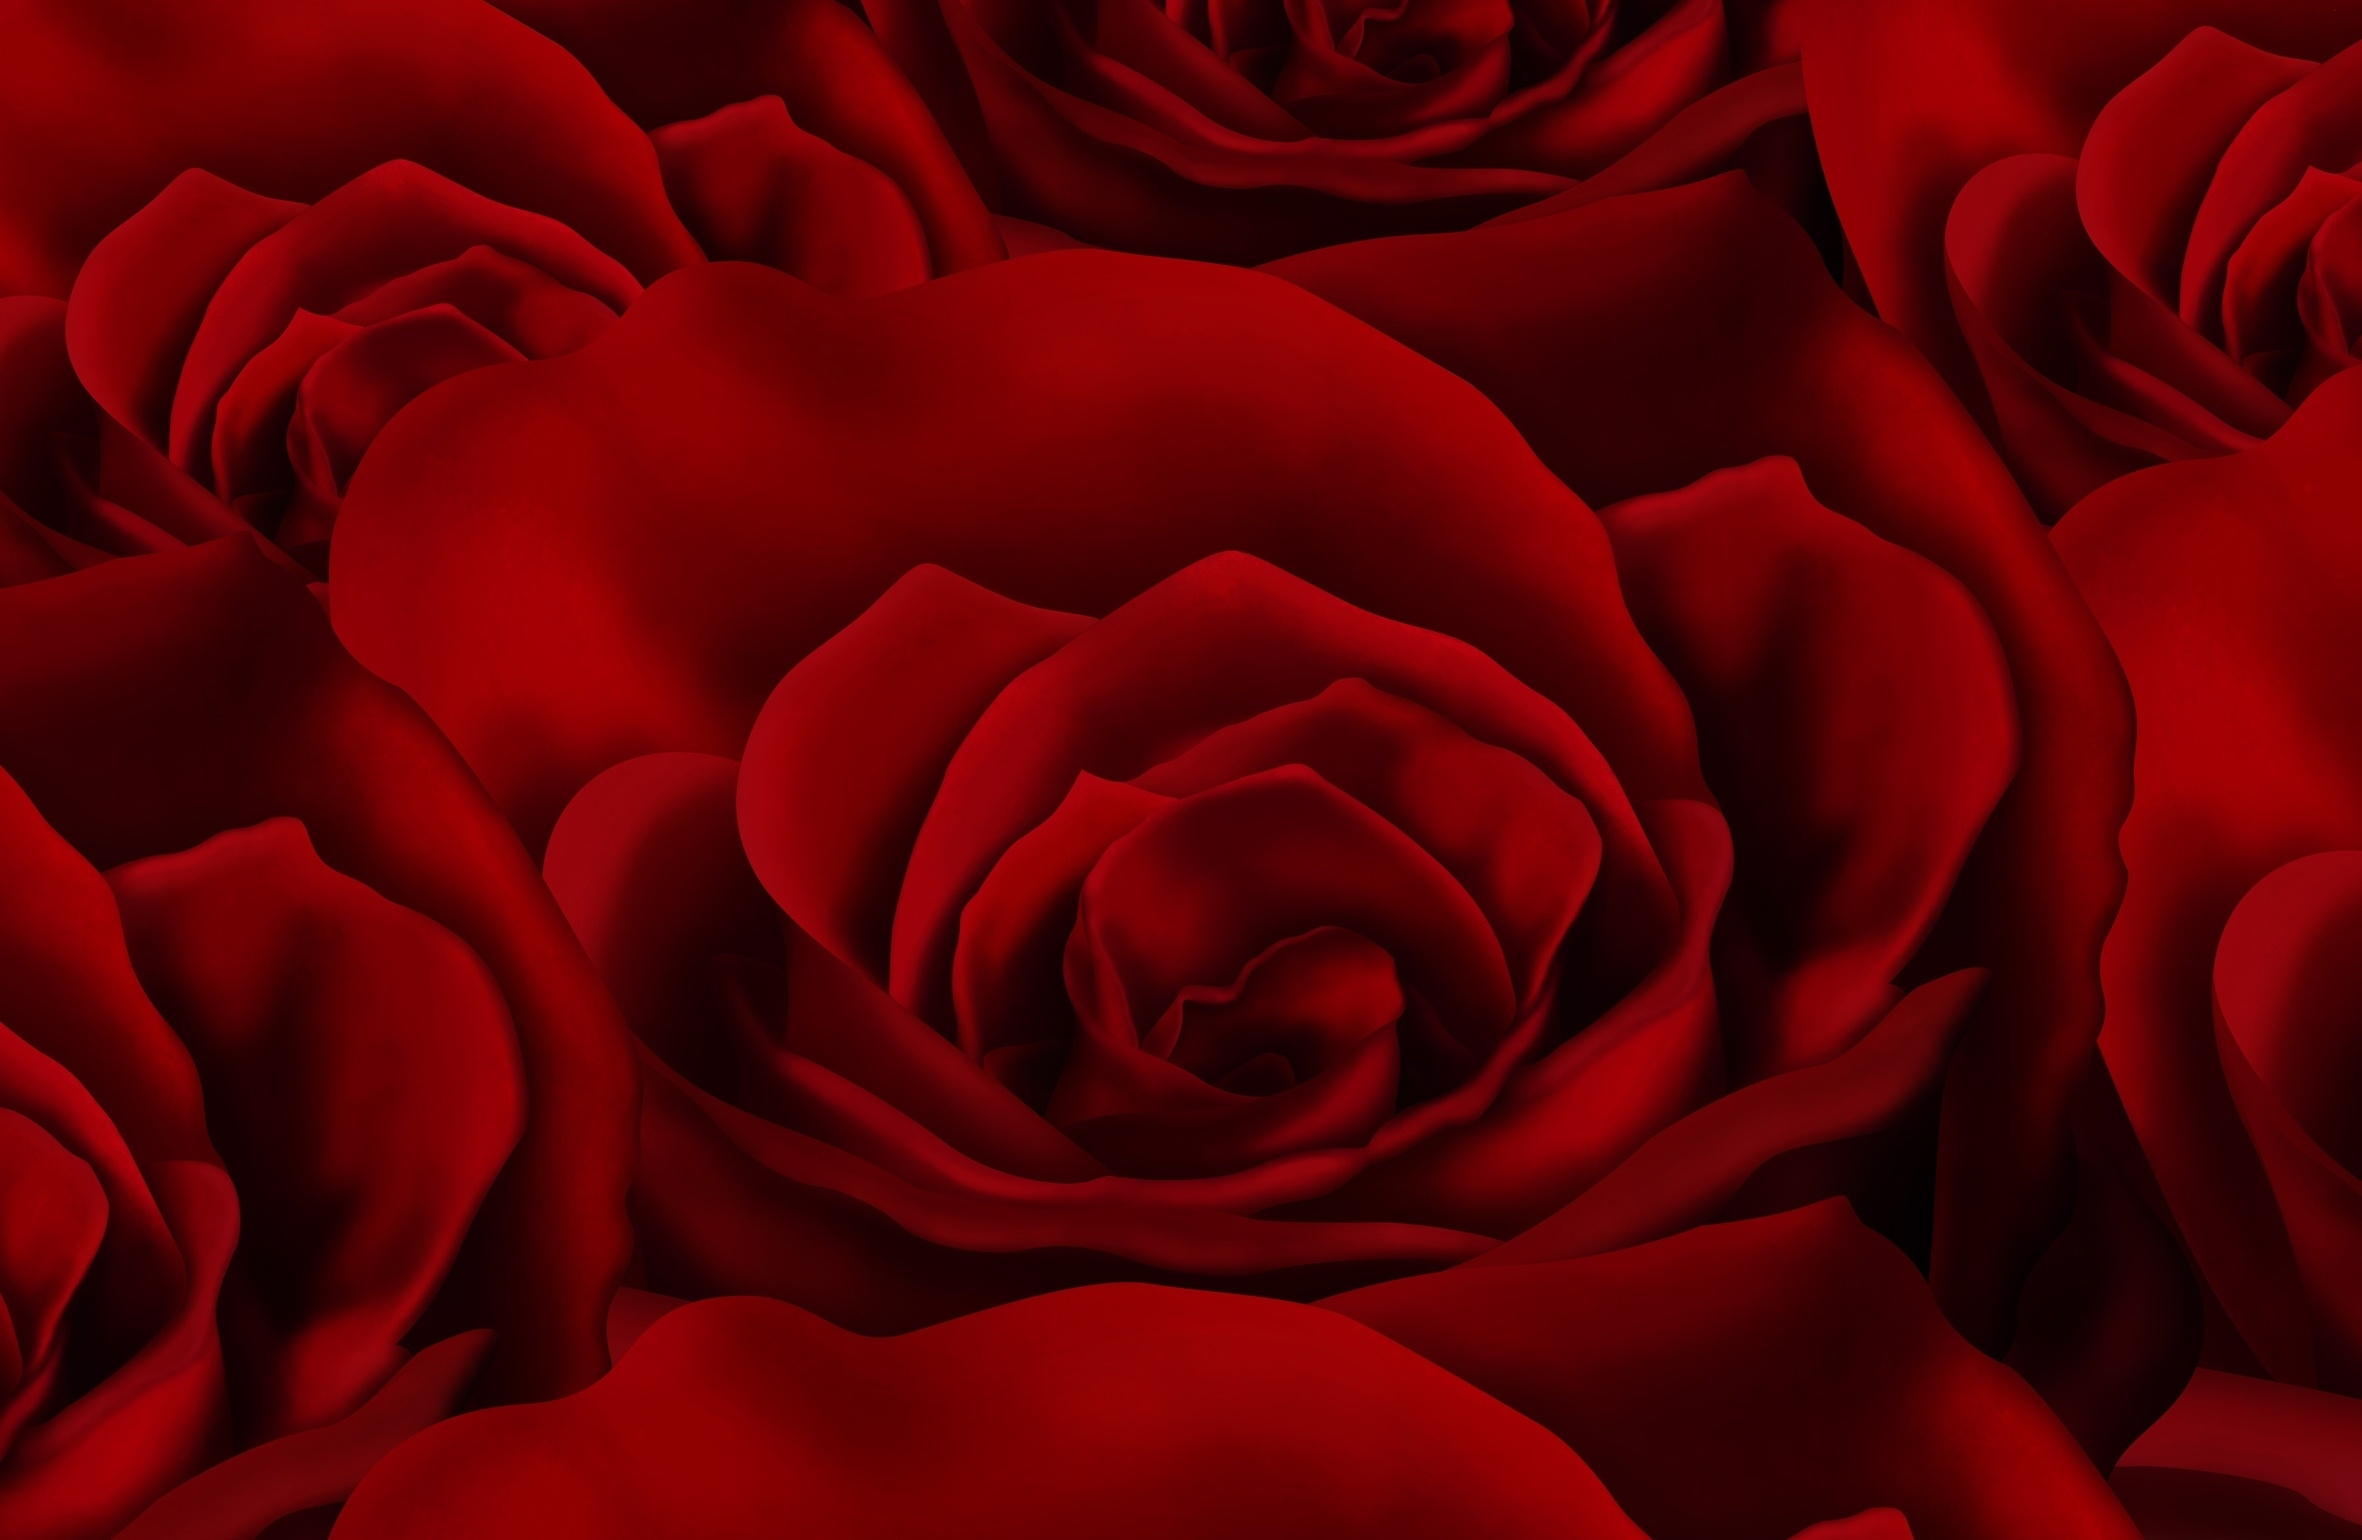 Скачать обои бесплатно Роза, Красный, Красная Роза, Художественные картинка на рабочий стол ПК